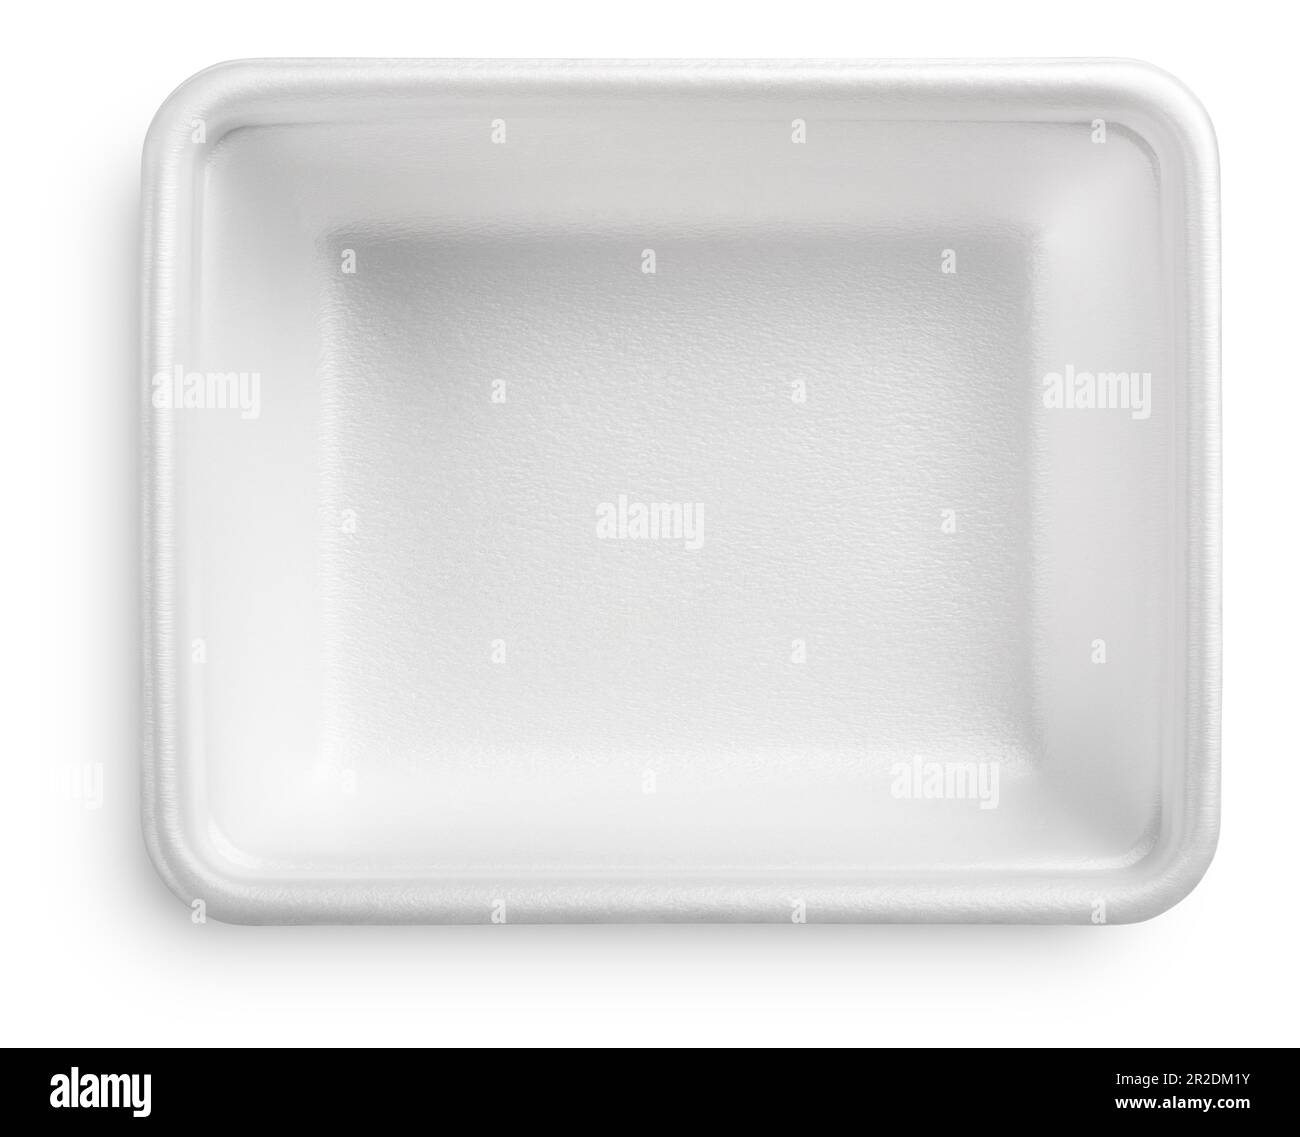 Placa de plástico blanco o contenedor de alimentos de espuma de poliestireno aislado en fondo blanco con ruta de recorte Foto de stock